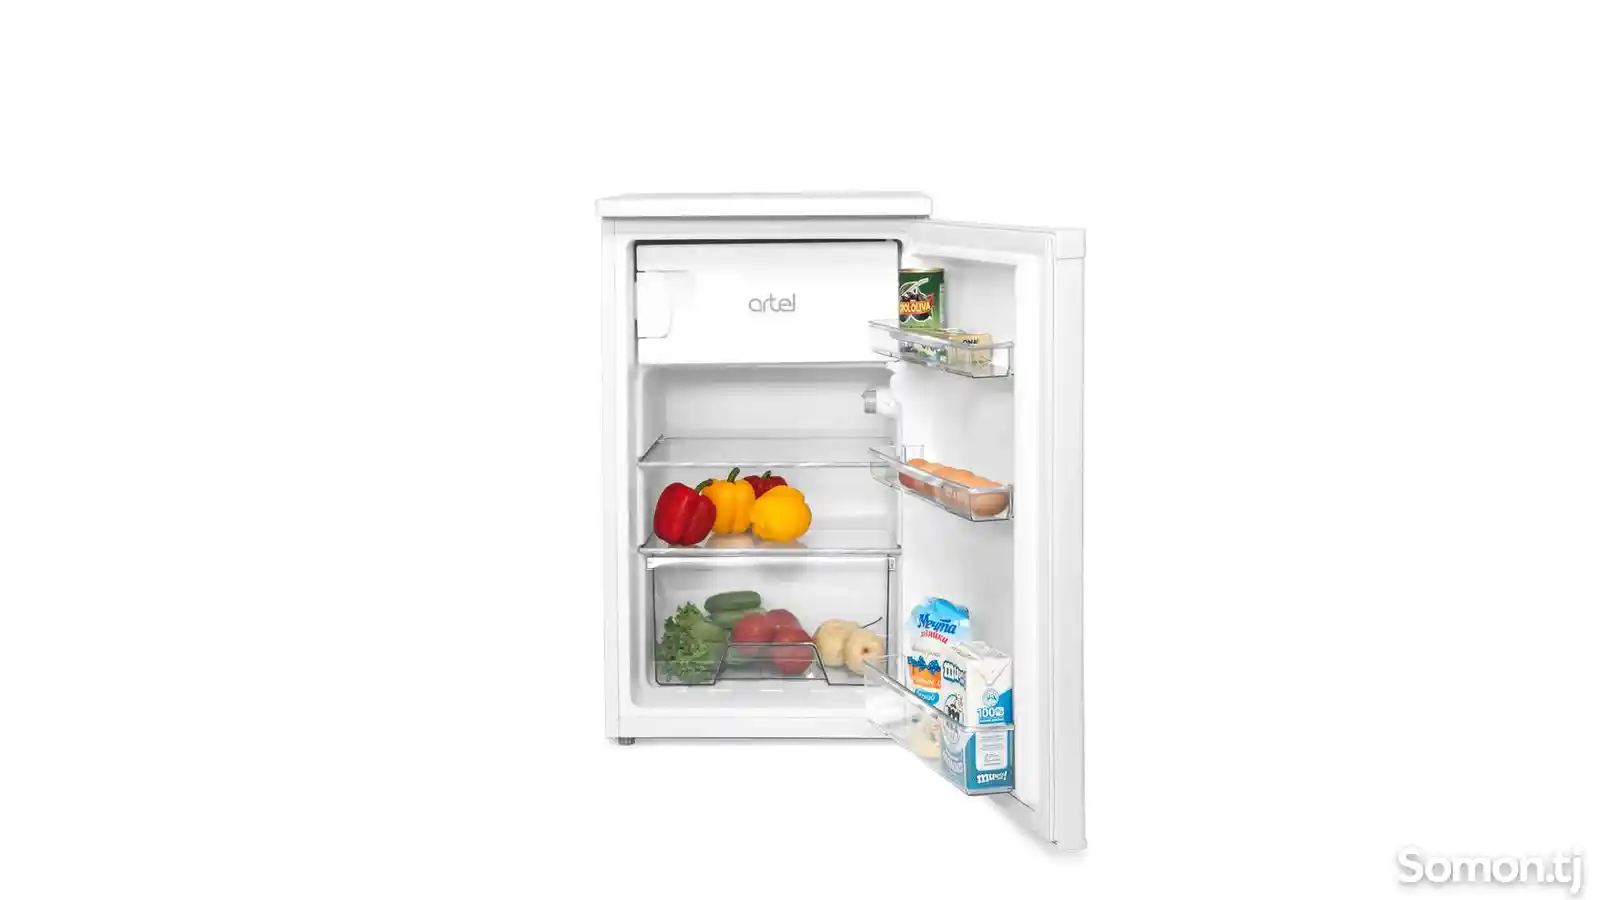 Однокамерный холодильник Artel Hs 137Rn-2